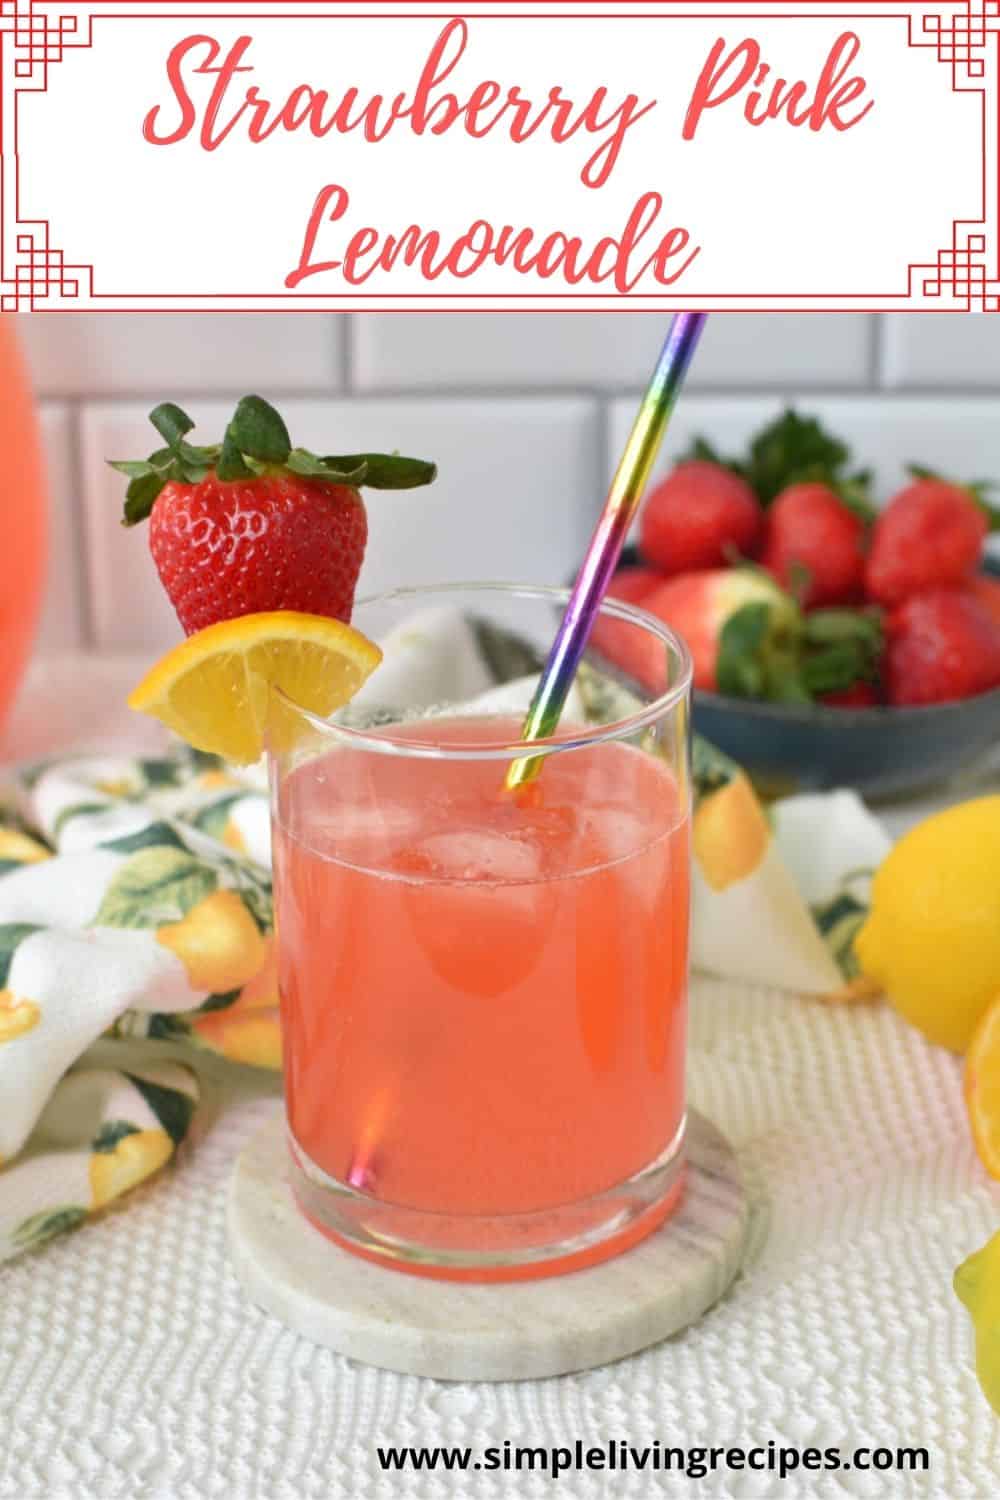 Strawberry pink lemonade pin for Pinterest.